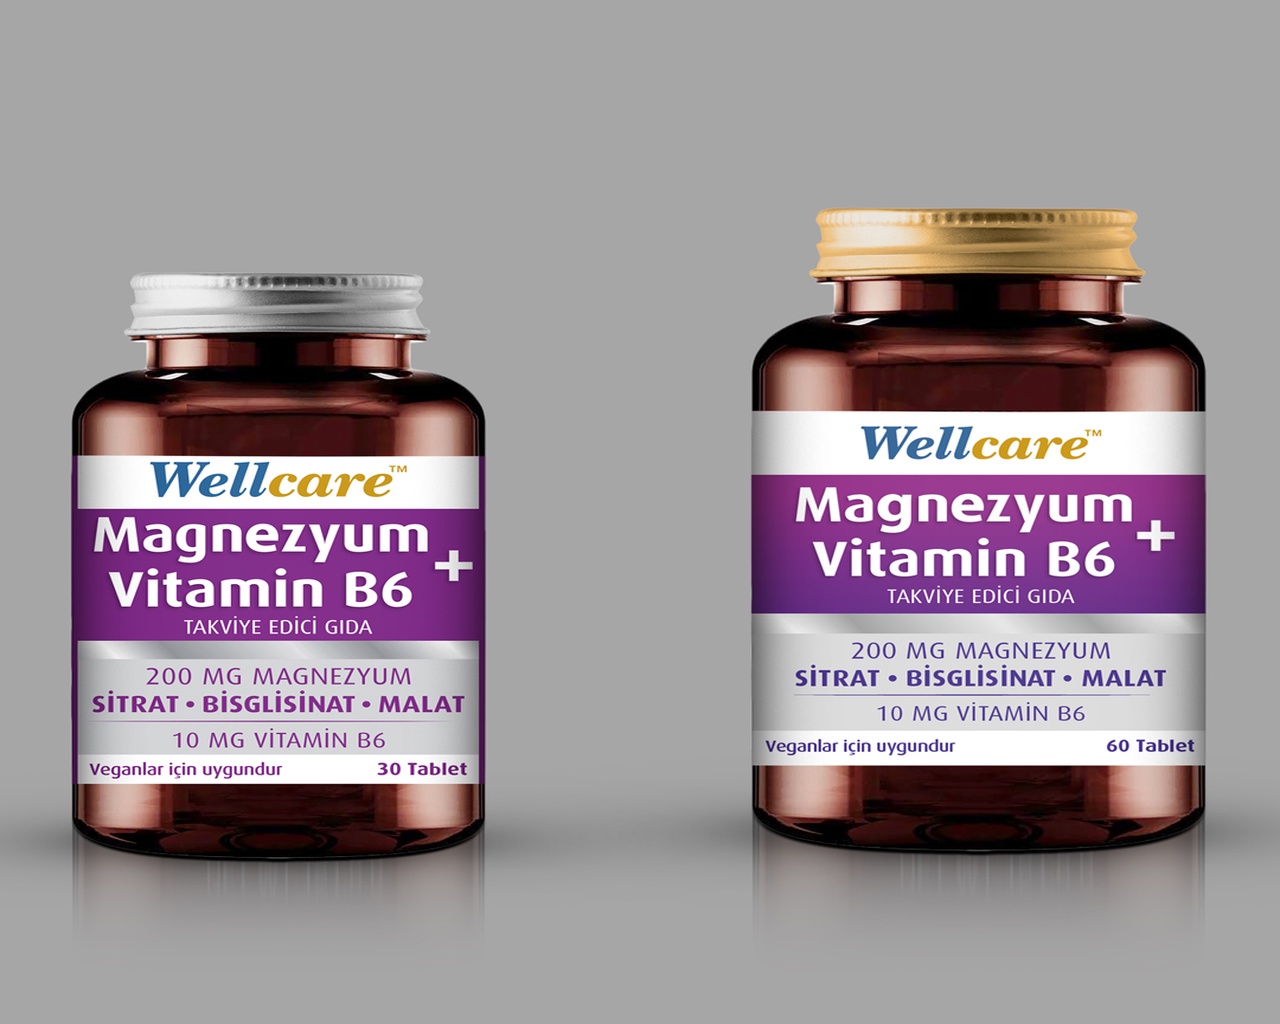 Wellcare'den Yeni Bir Ürün Daha: Magnezyum+ Vitamin B6